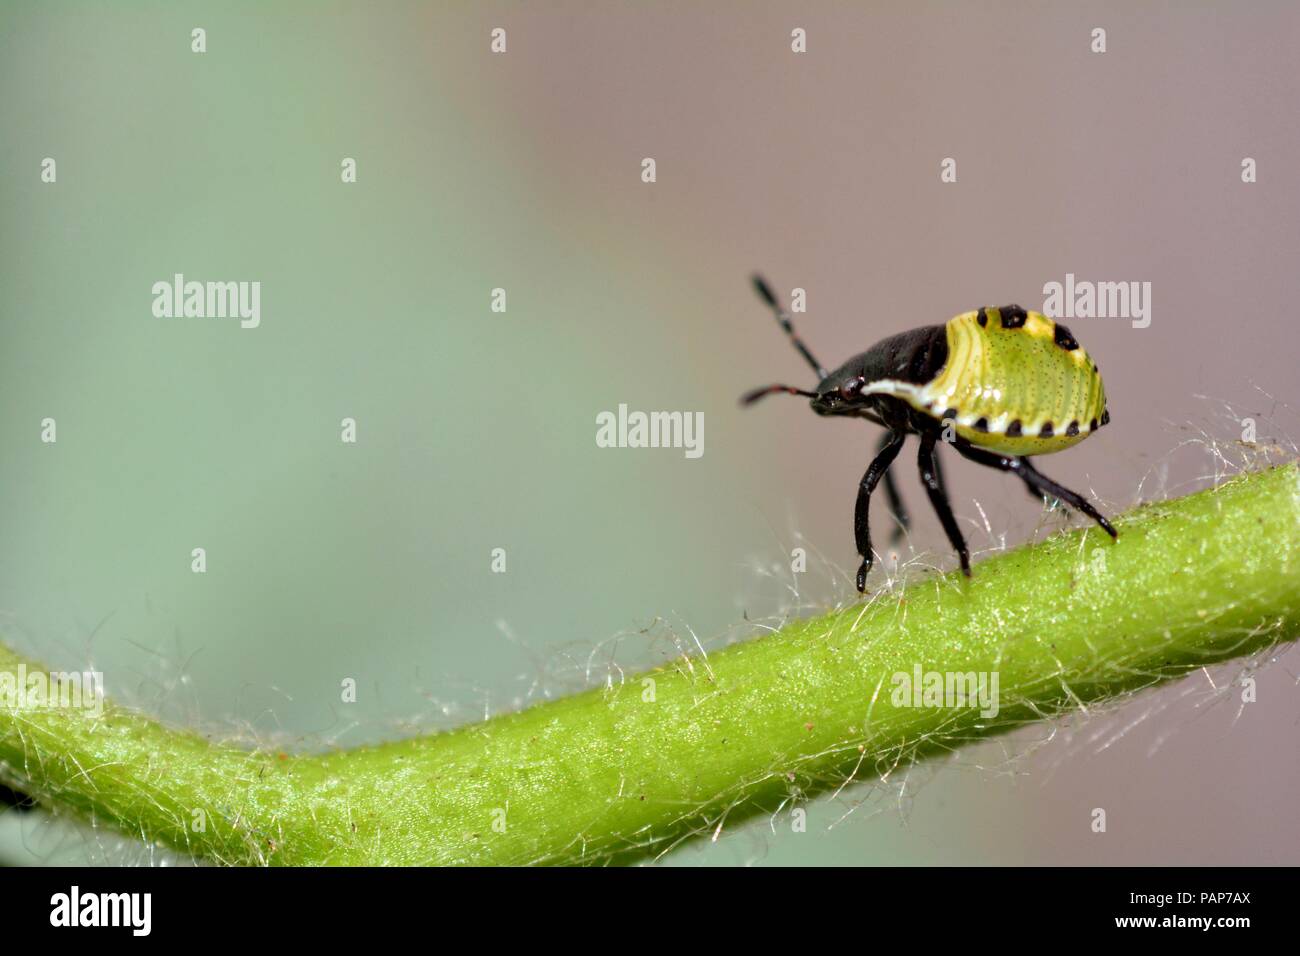 Nymphe d'un green stink bug ( Palomena prasina ) en usines avec de nombreux copy space Banque D'Images